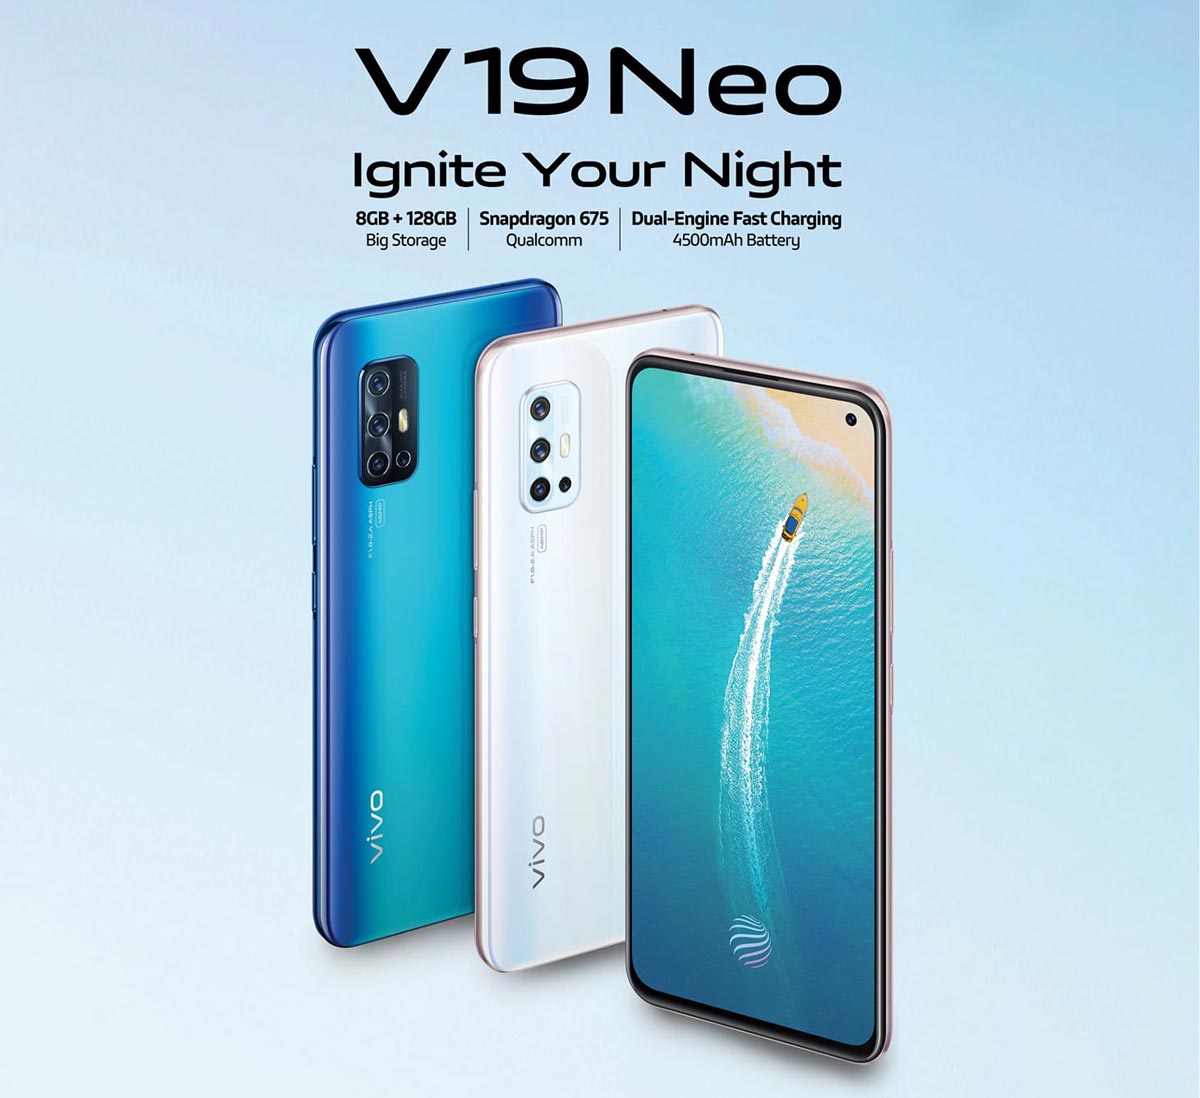 Vivo V19 Neo chính
thức ra mắt với Snapdragon 675, 4 camera sau 48MP, giá 8.3
triệu đồng